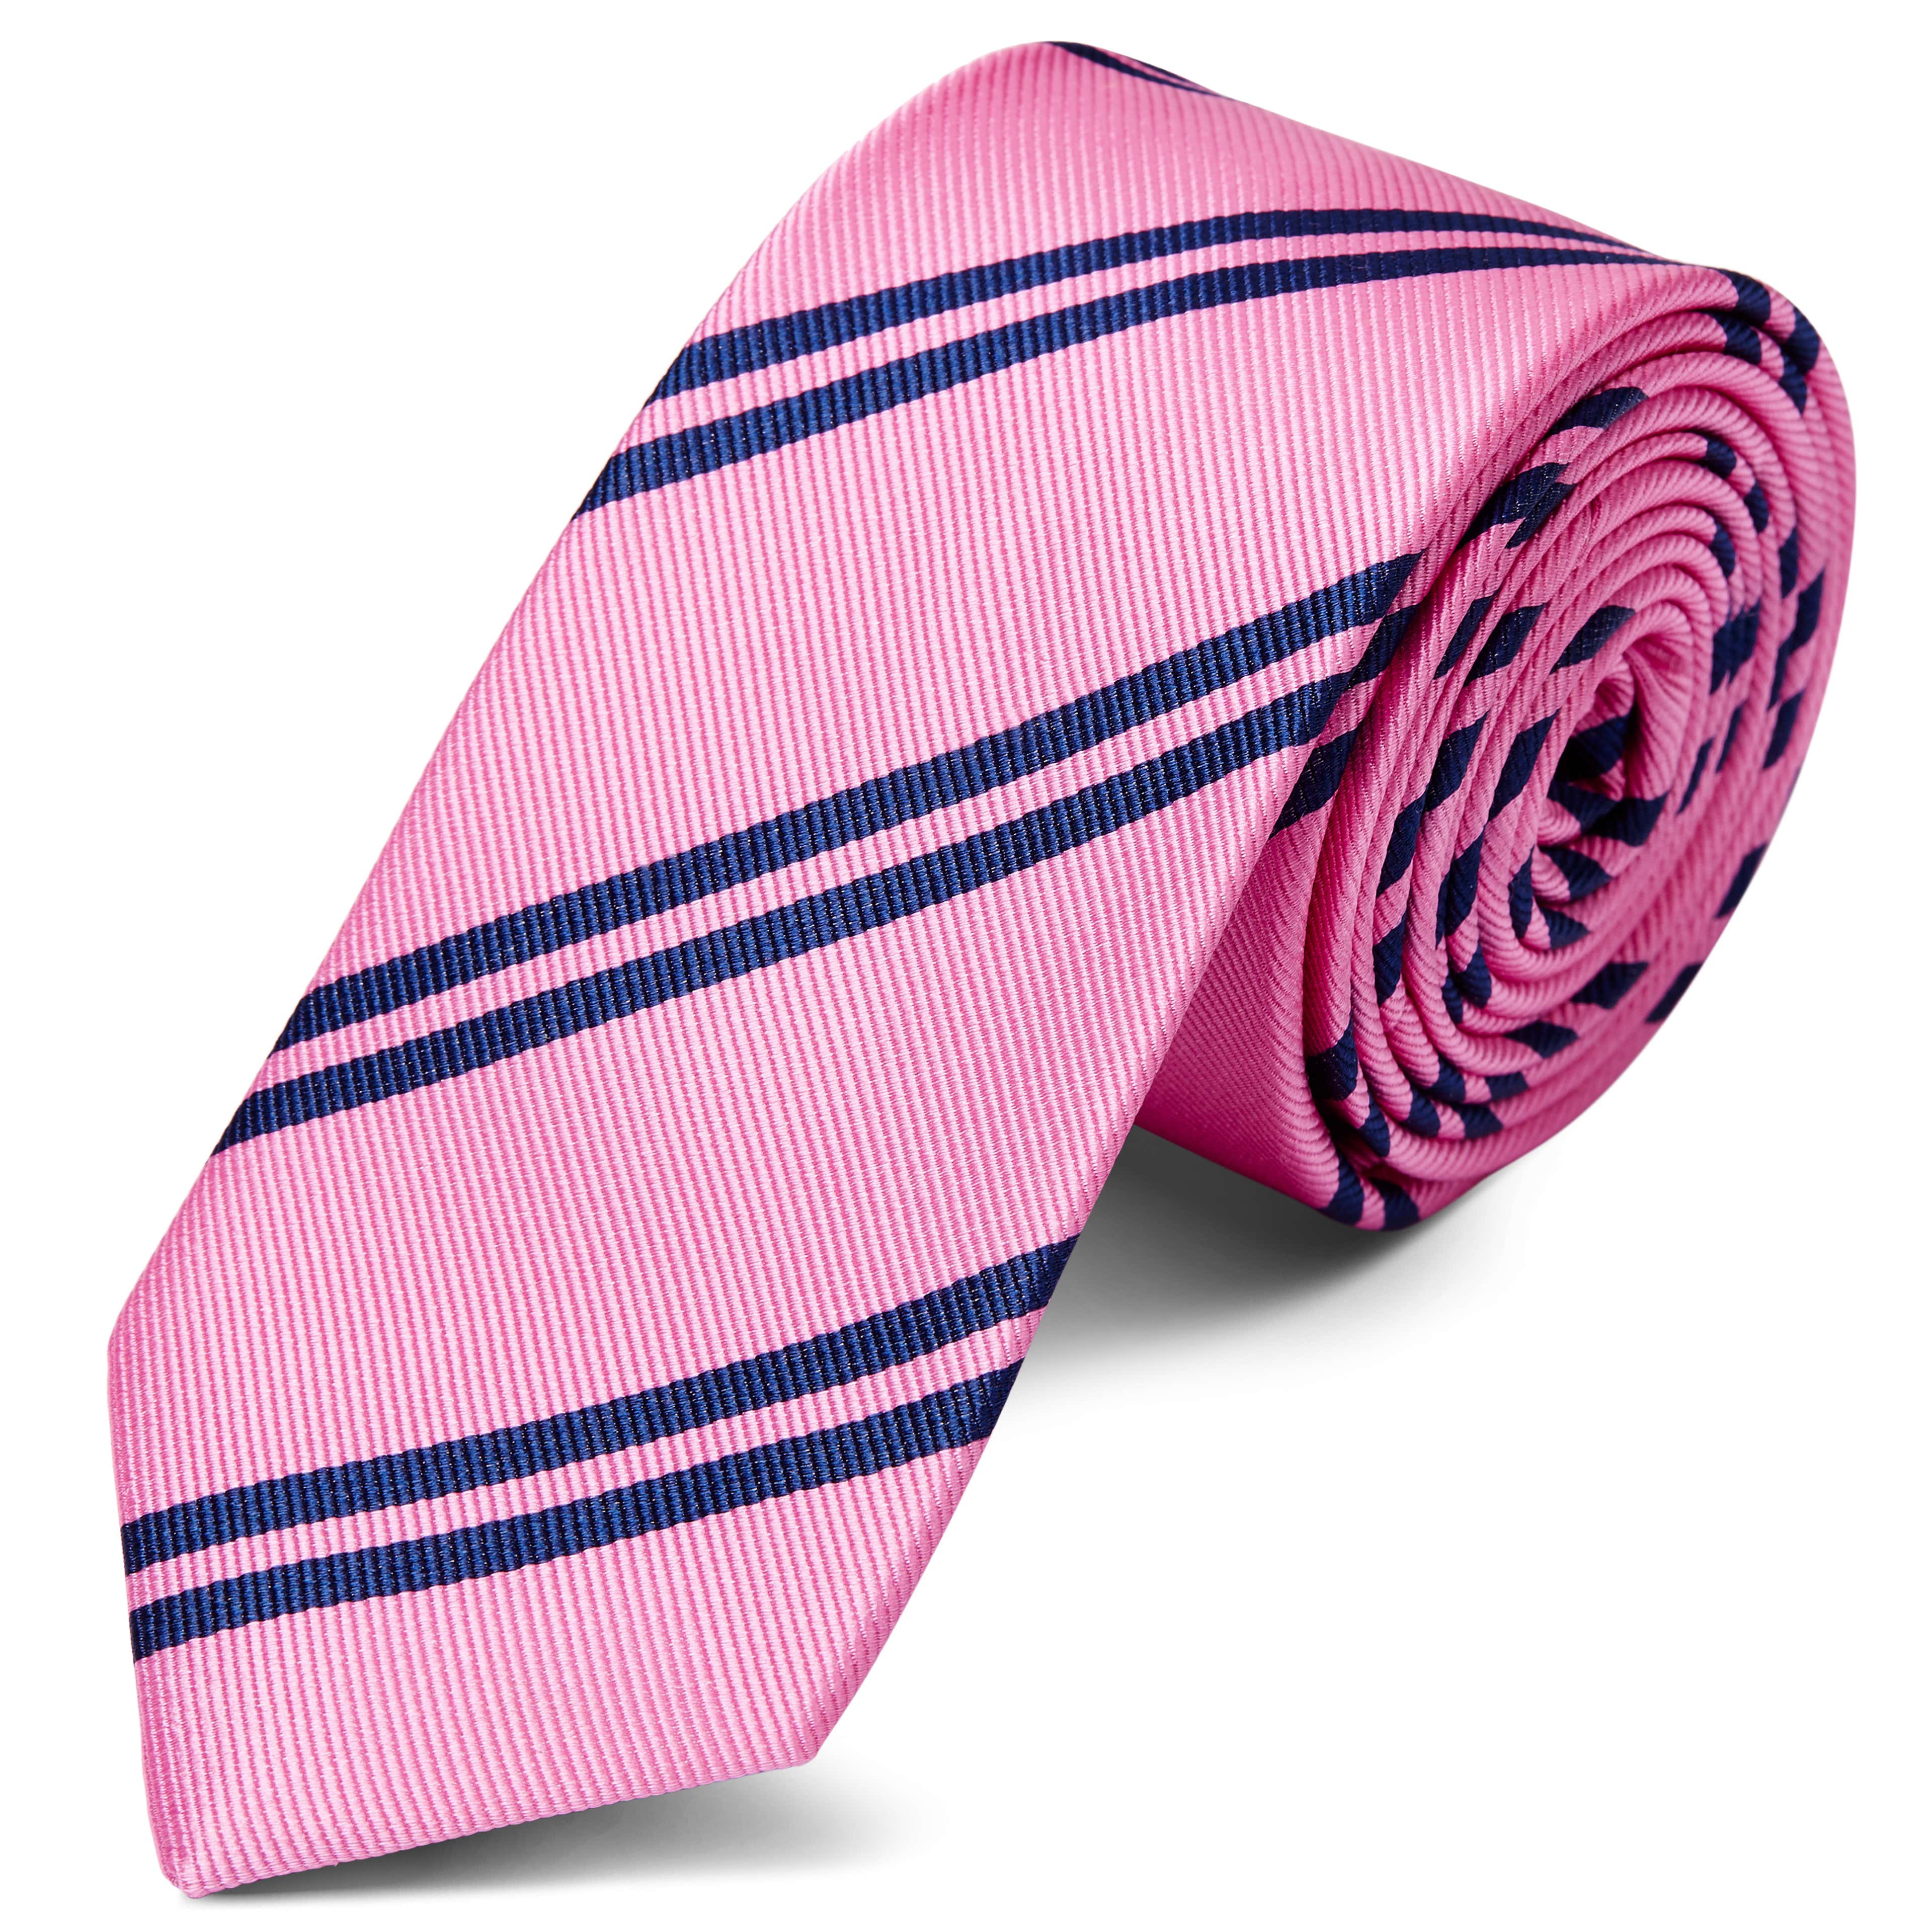 Cravată 6 cm din mătase roz cu dungi duble bleumarin